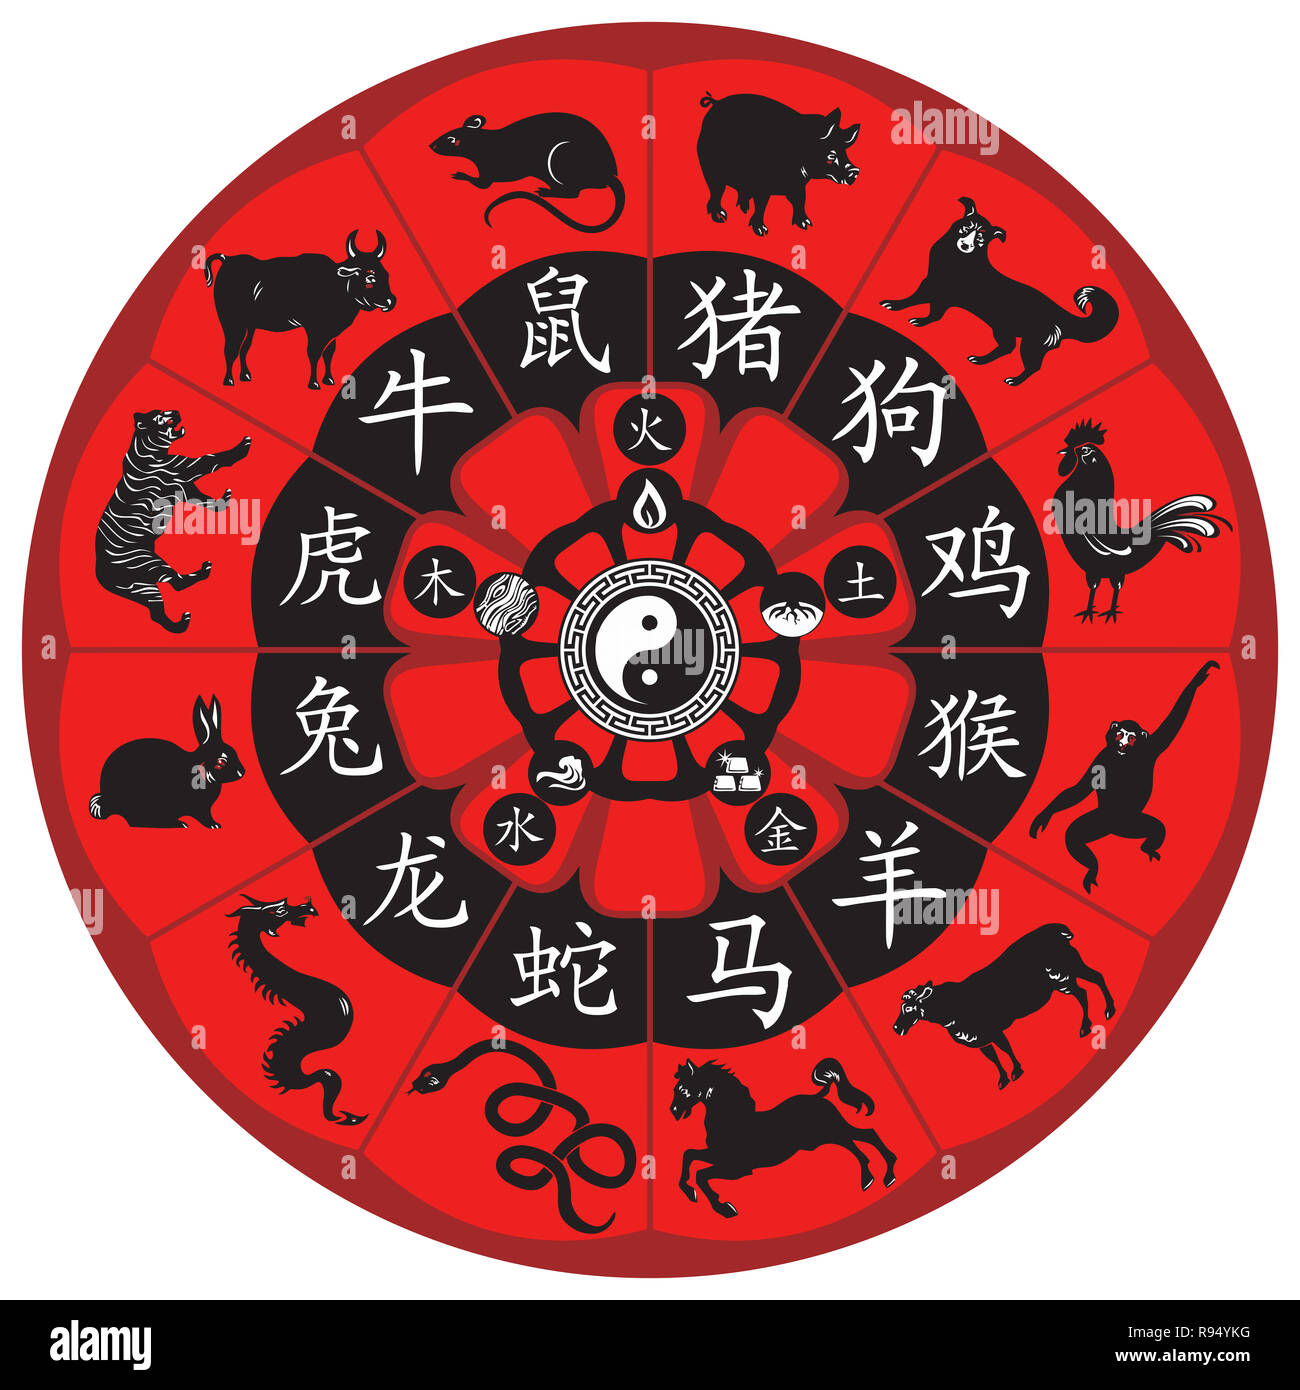 Les animaux du zodiaque chinois horoscope roue illustration Yin Yang taoïste Banque D'Images